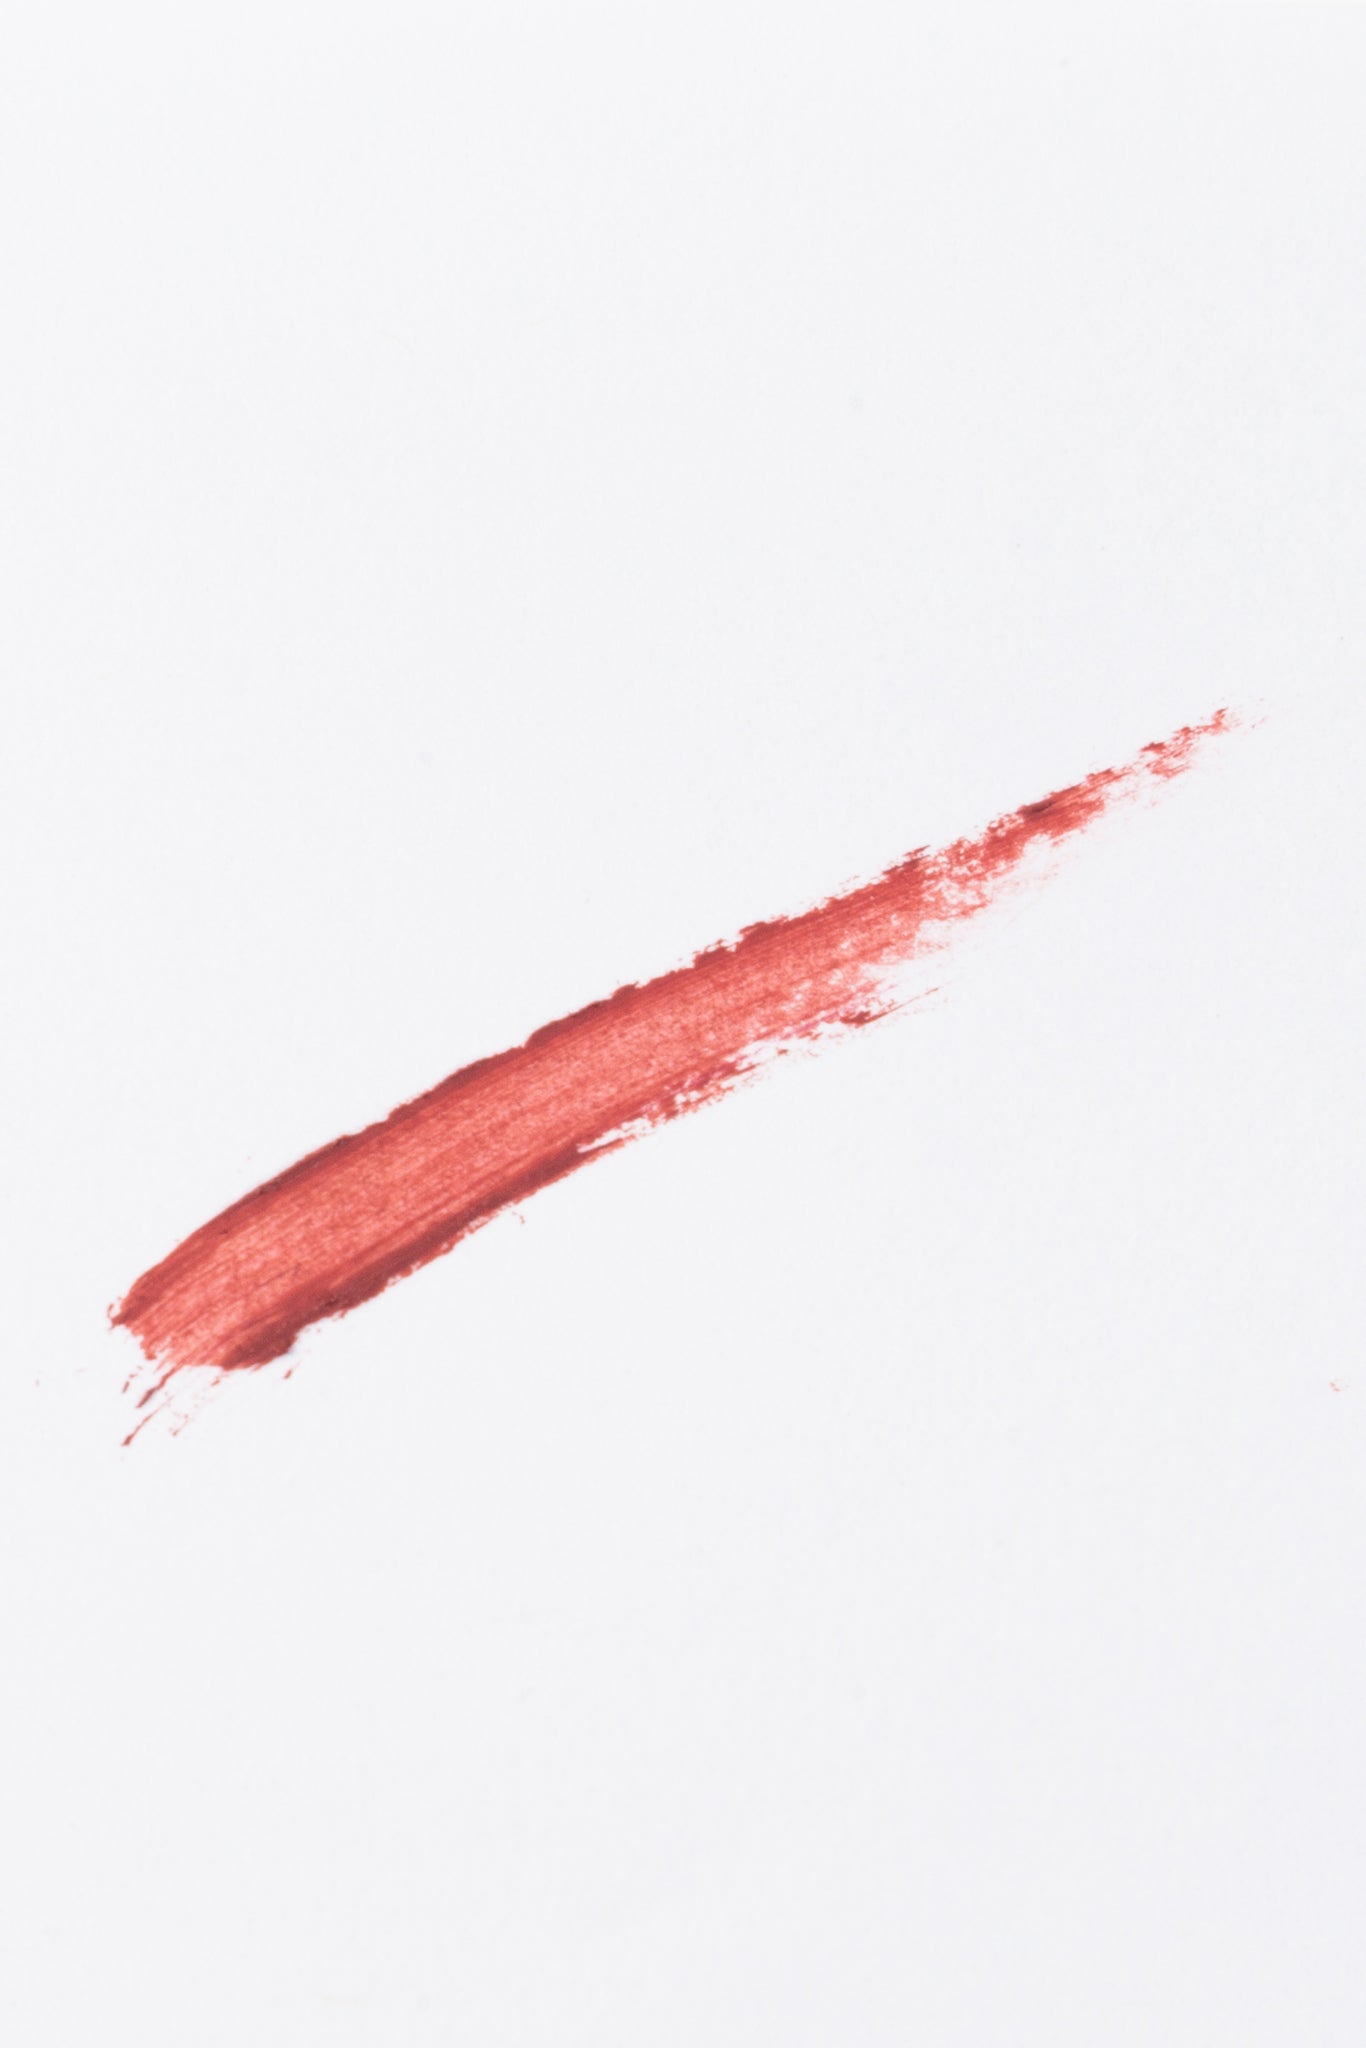 Lipstick in Prim and Proper